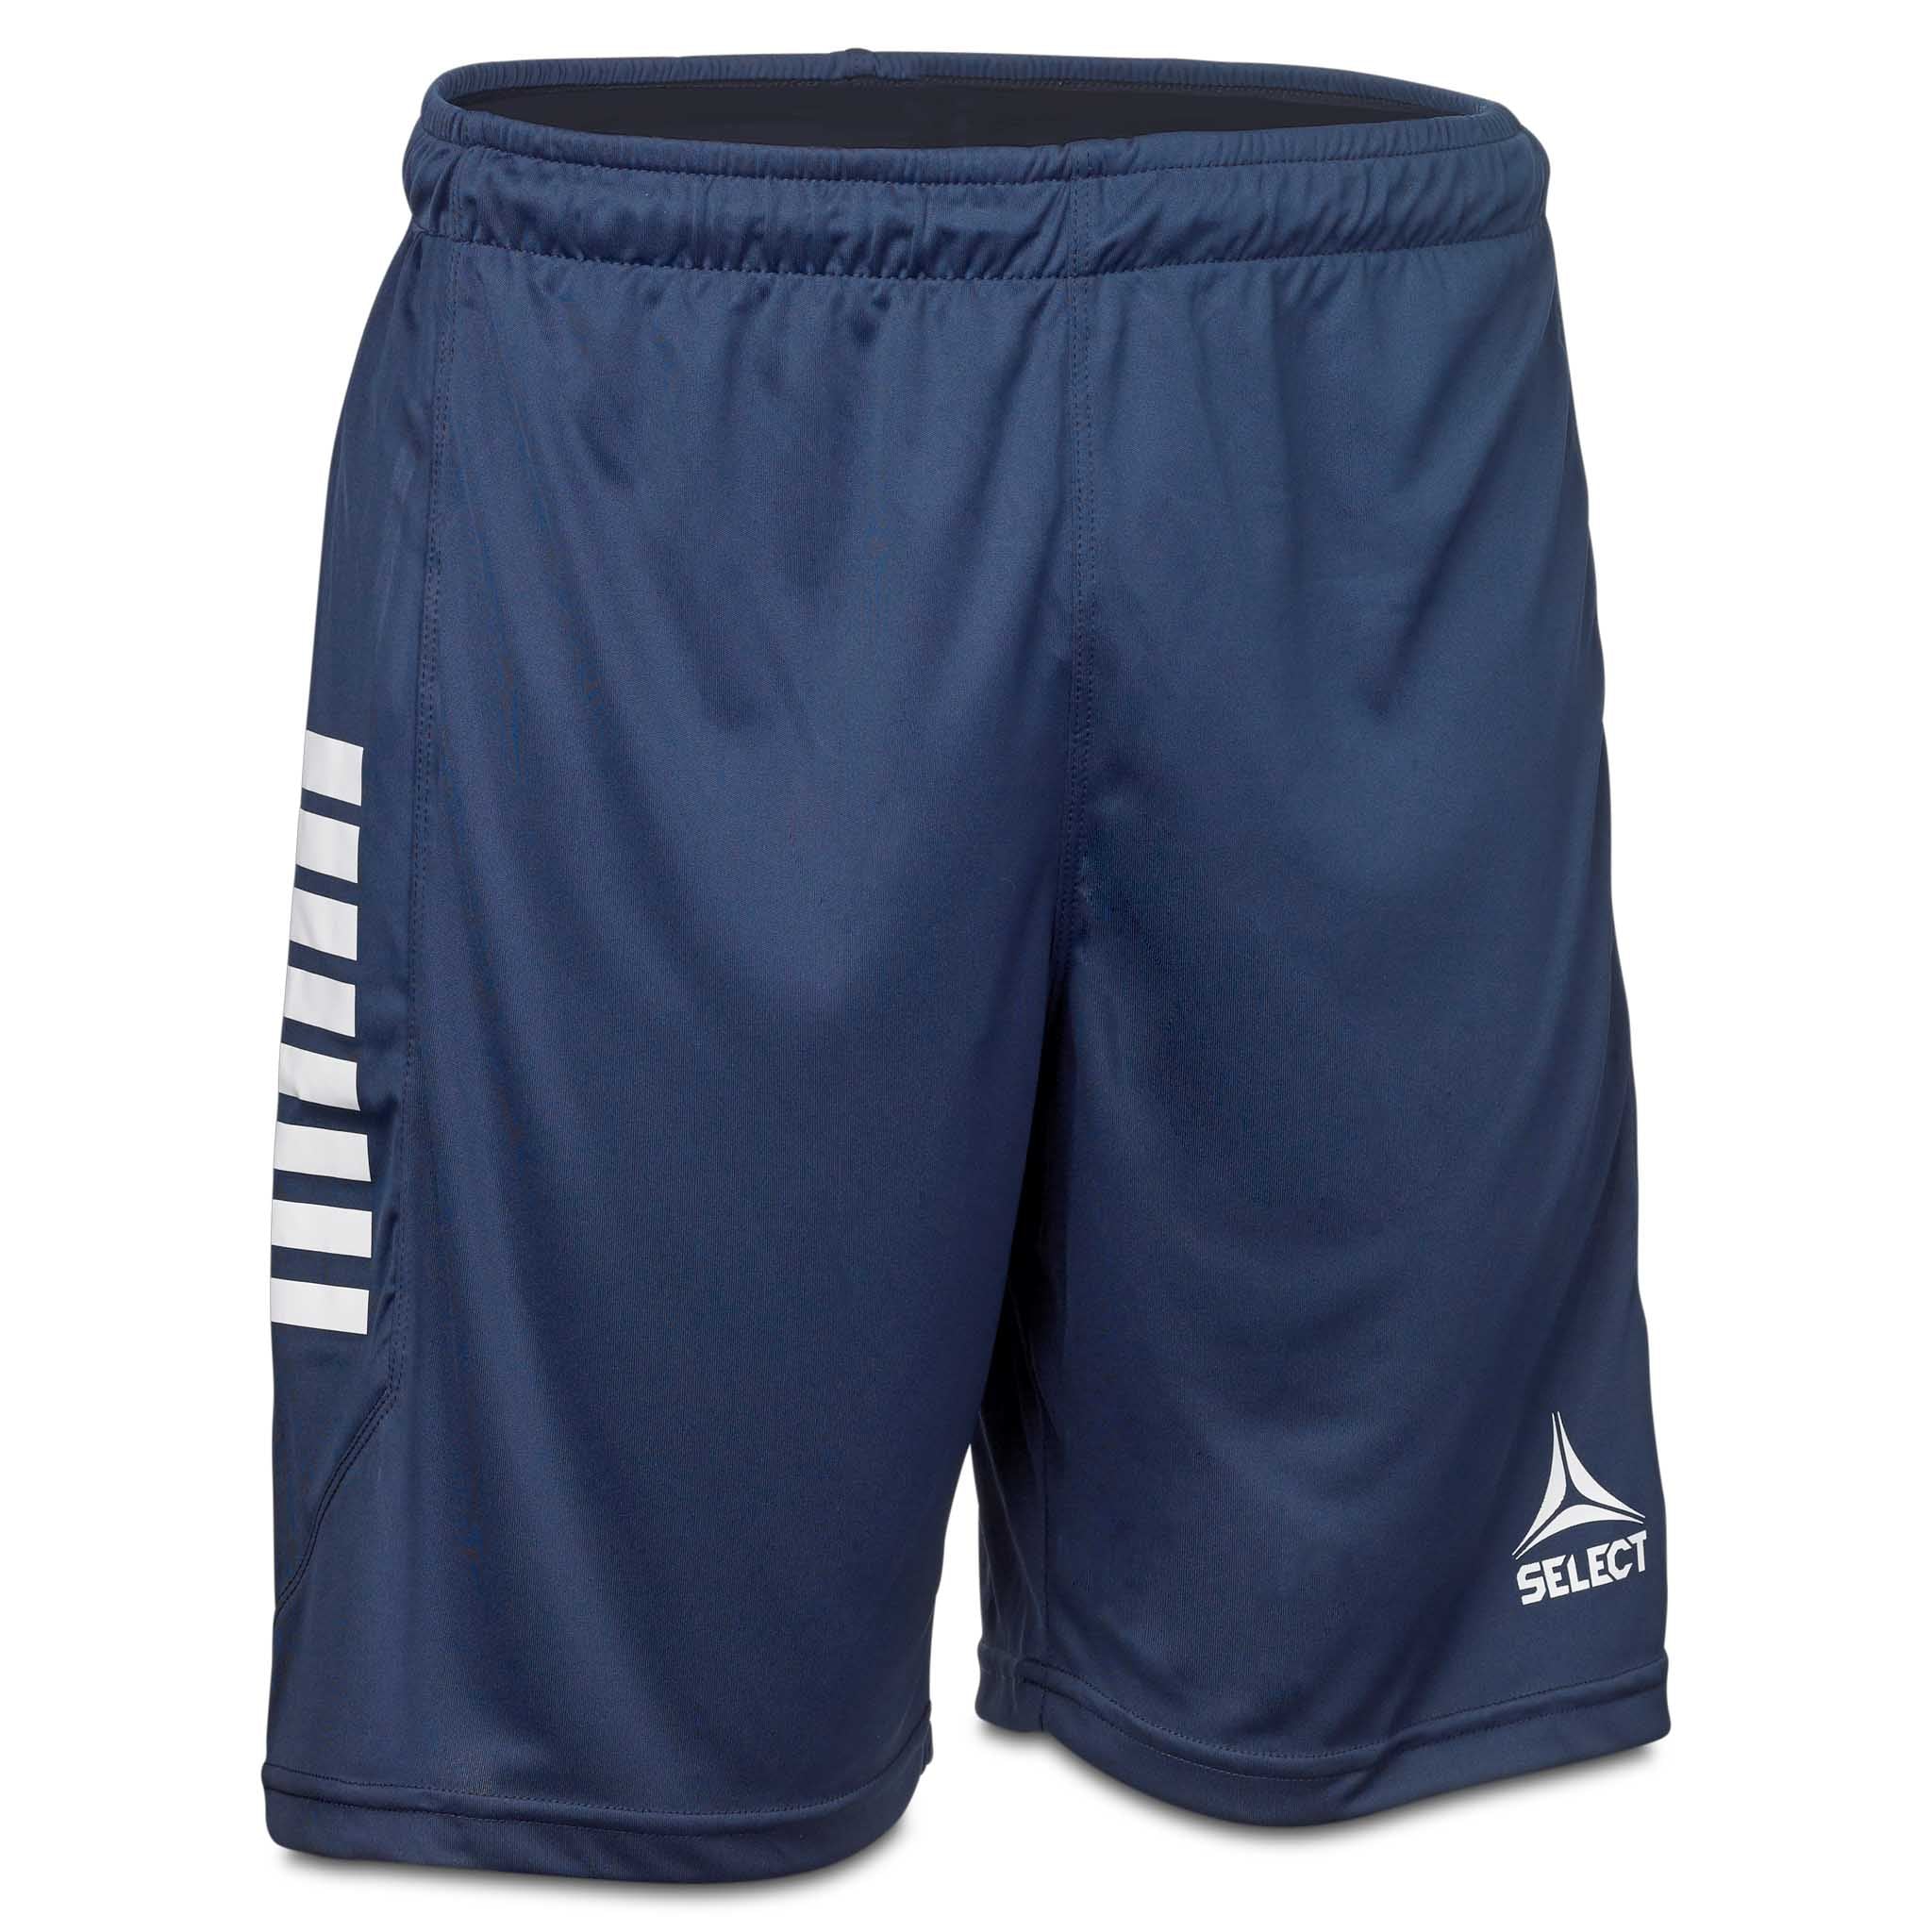 Monaco shorts - Barn #farge_marine/hvit